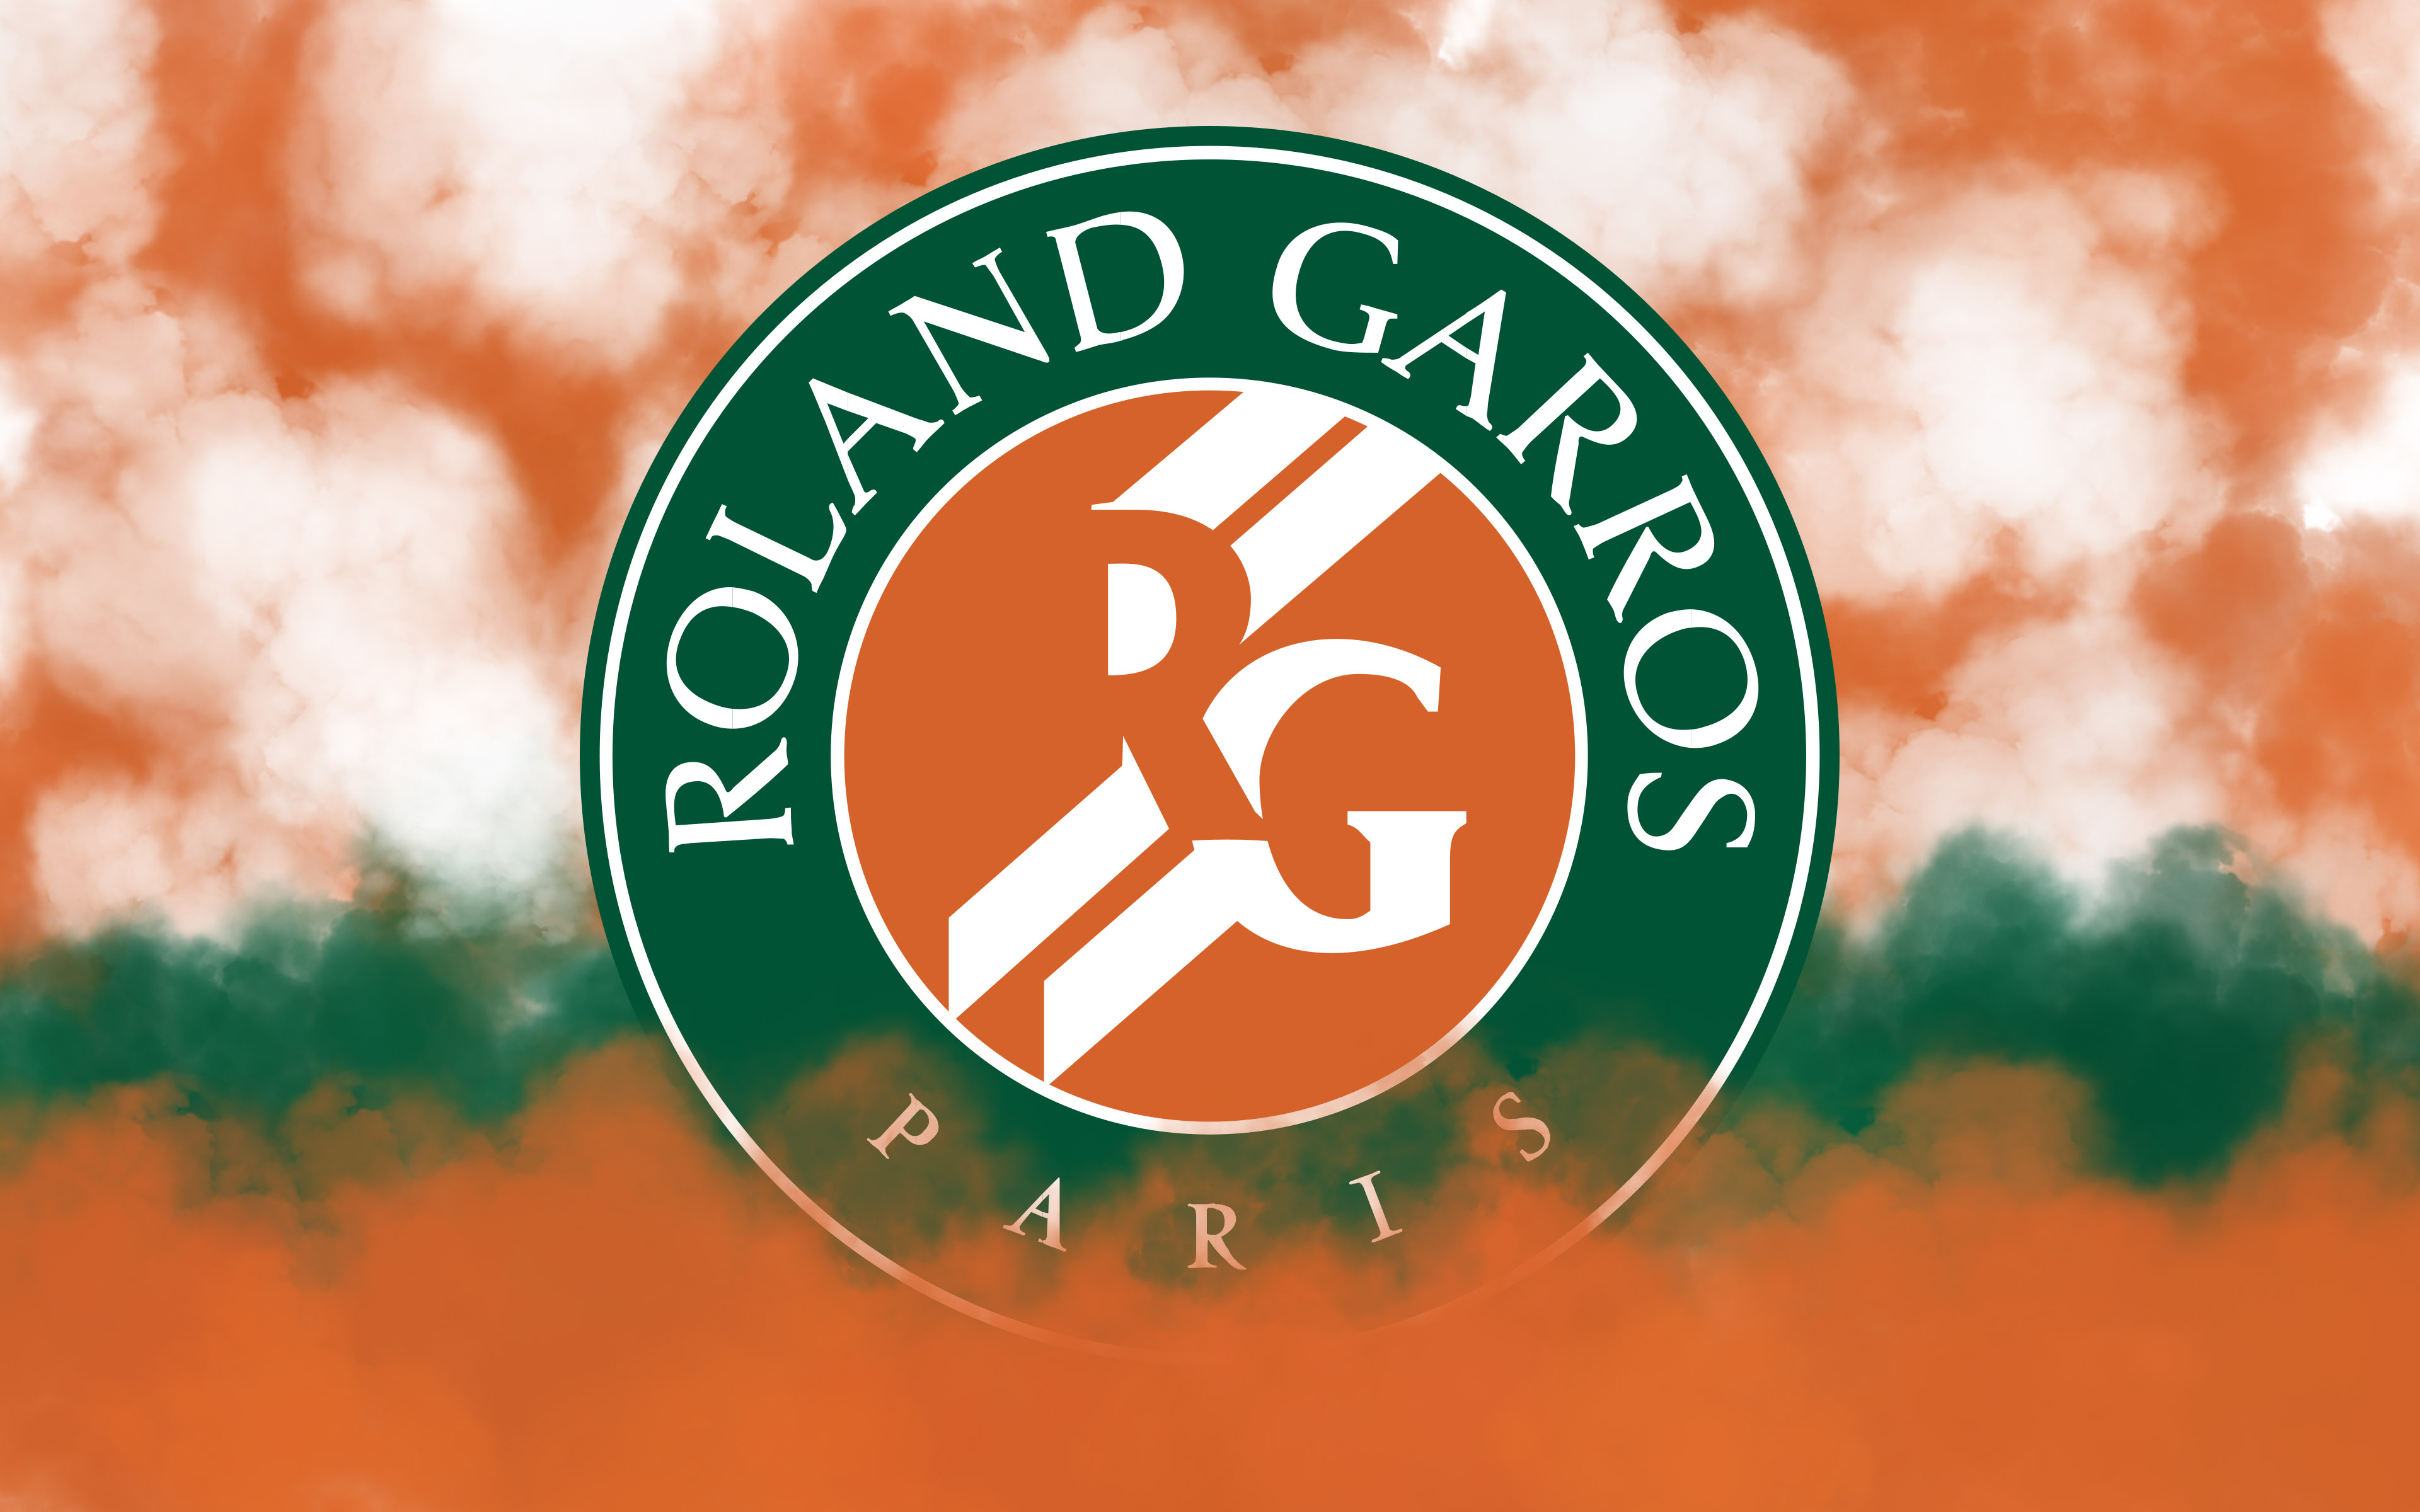 Roland Garros : les entrants du simple messieurs